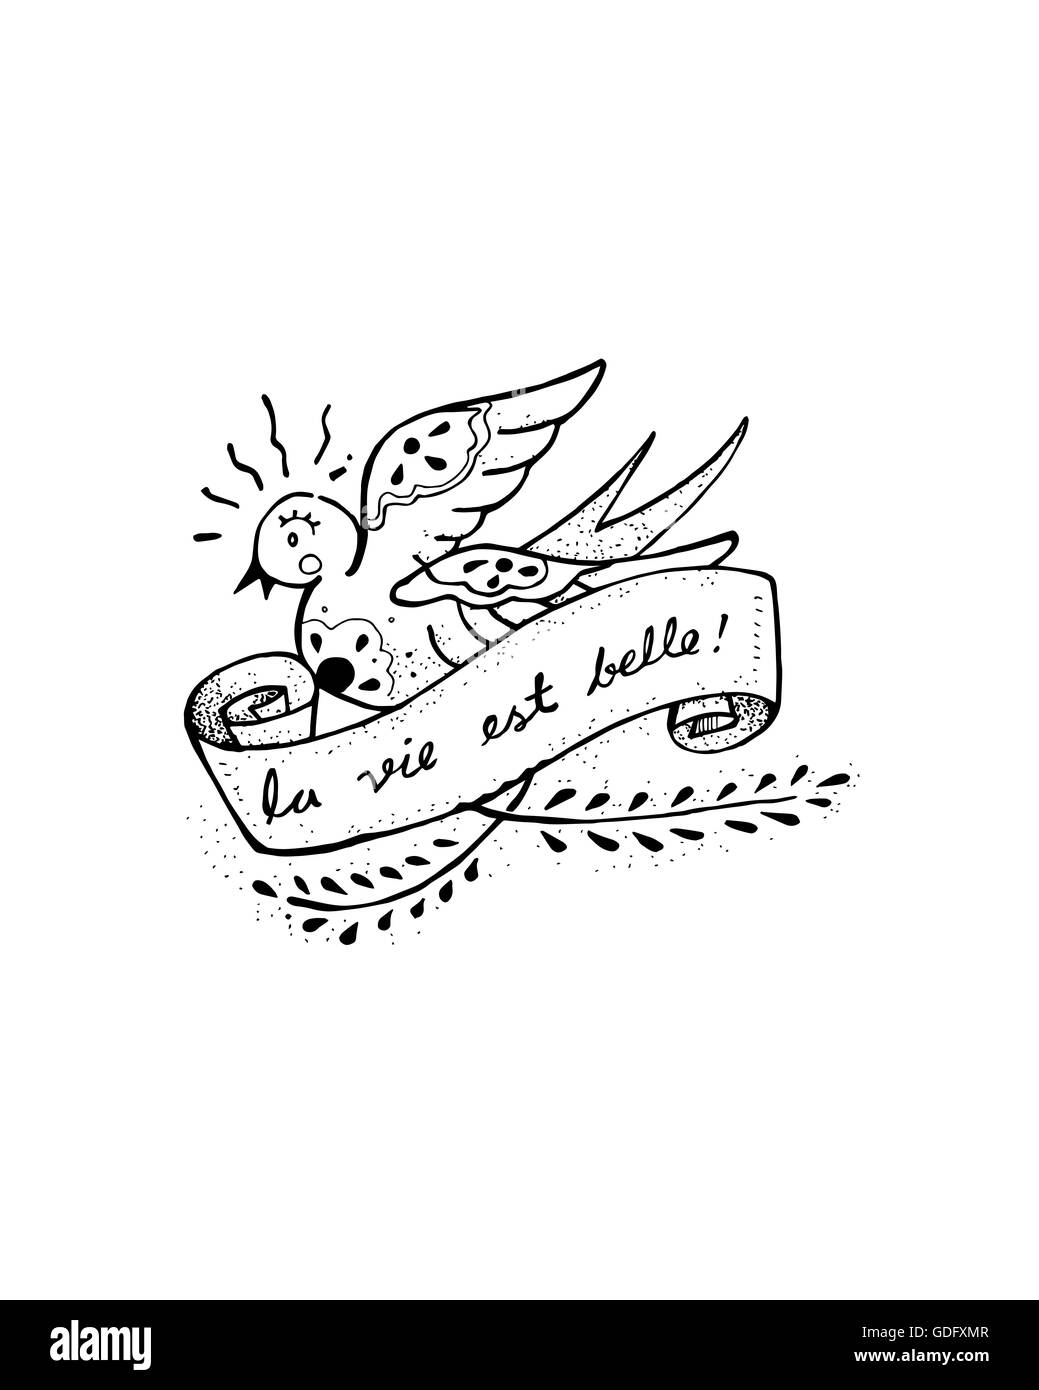 Illustration à la main ou d'un dessin d'un oiseau avaler avec un ruban qui dit que la vie est belle en français Banque D'Images